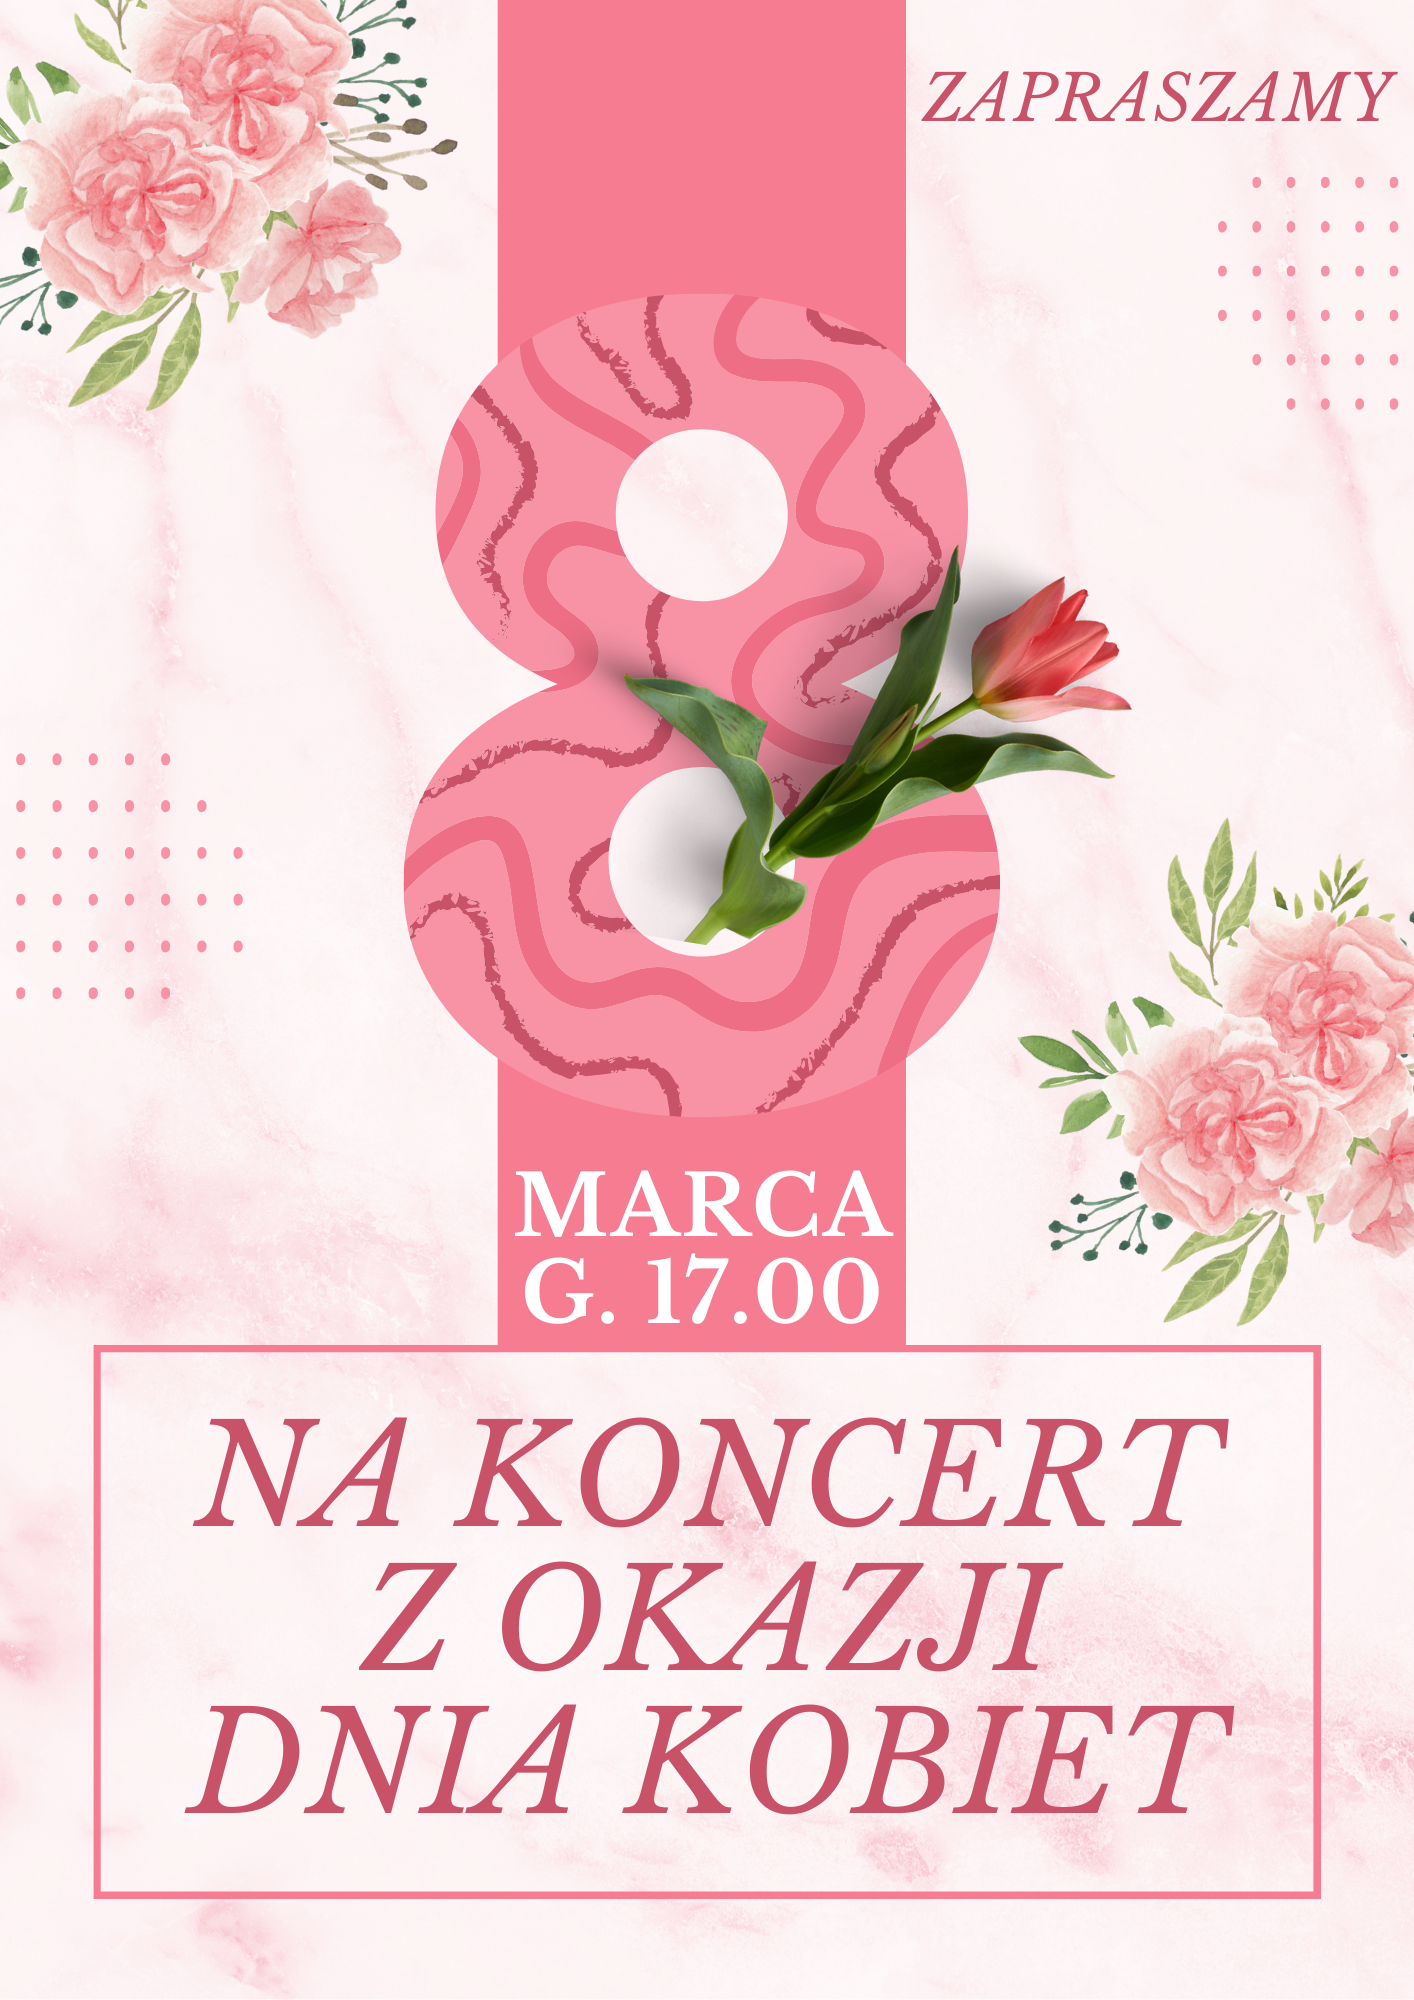 Plakat ze szczegółami koncertu w kolorze różowym ze zdjęciami kwiatów